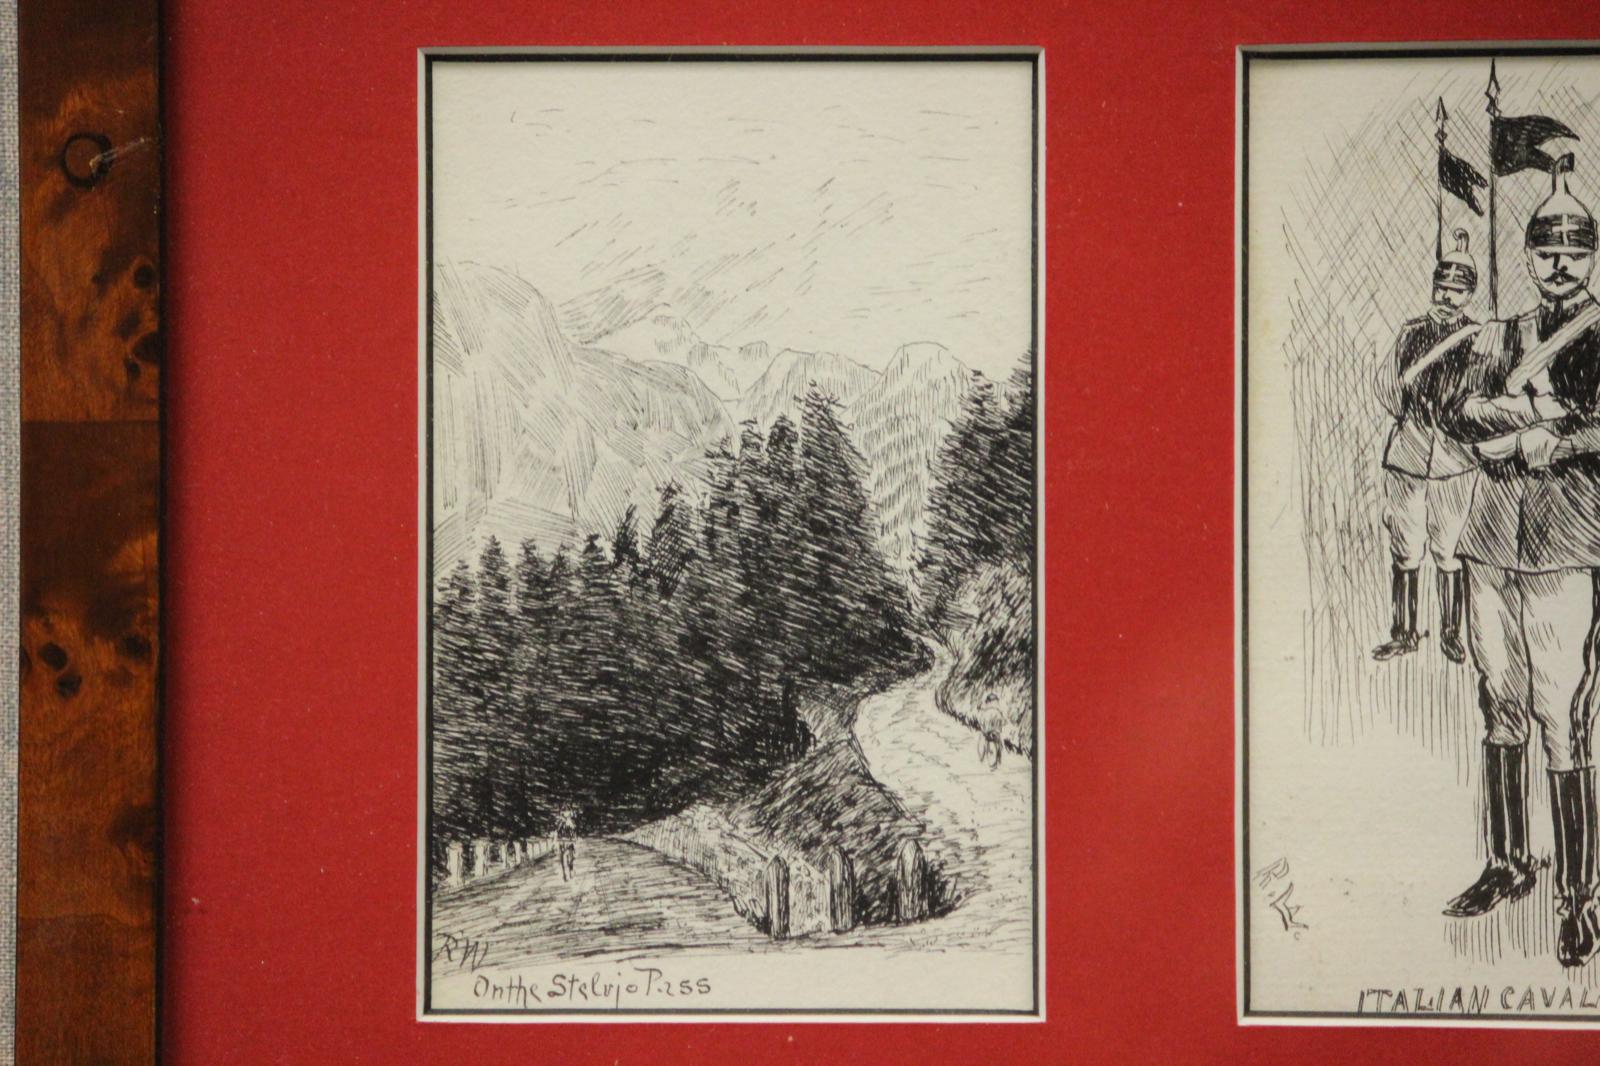 Charmante handgezeichnete Federzeichnungen von Szenen in Italien und der Schweiz von R. W. Eniger auf (4) Postkarten aus den 1910er Jahren, adressiert an den Philanthropen Seymour H. Knox aus Buffalo, NY

Bildgröße: 11 3/4 